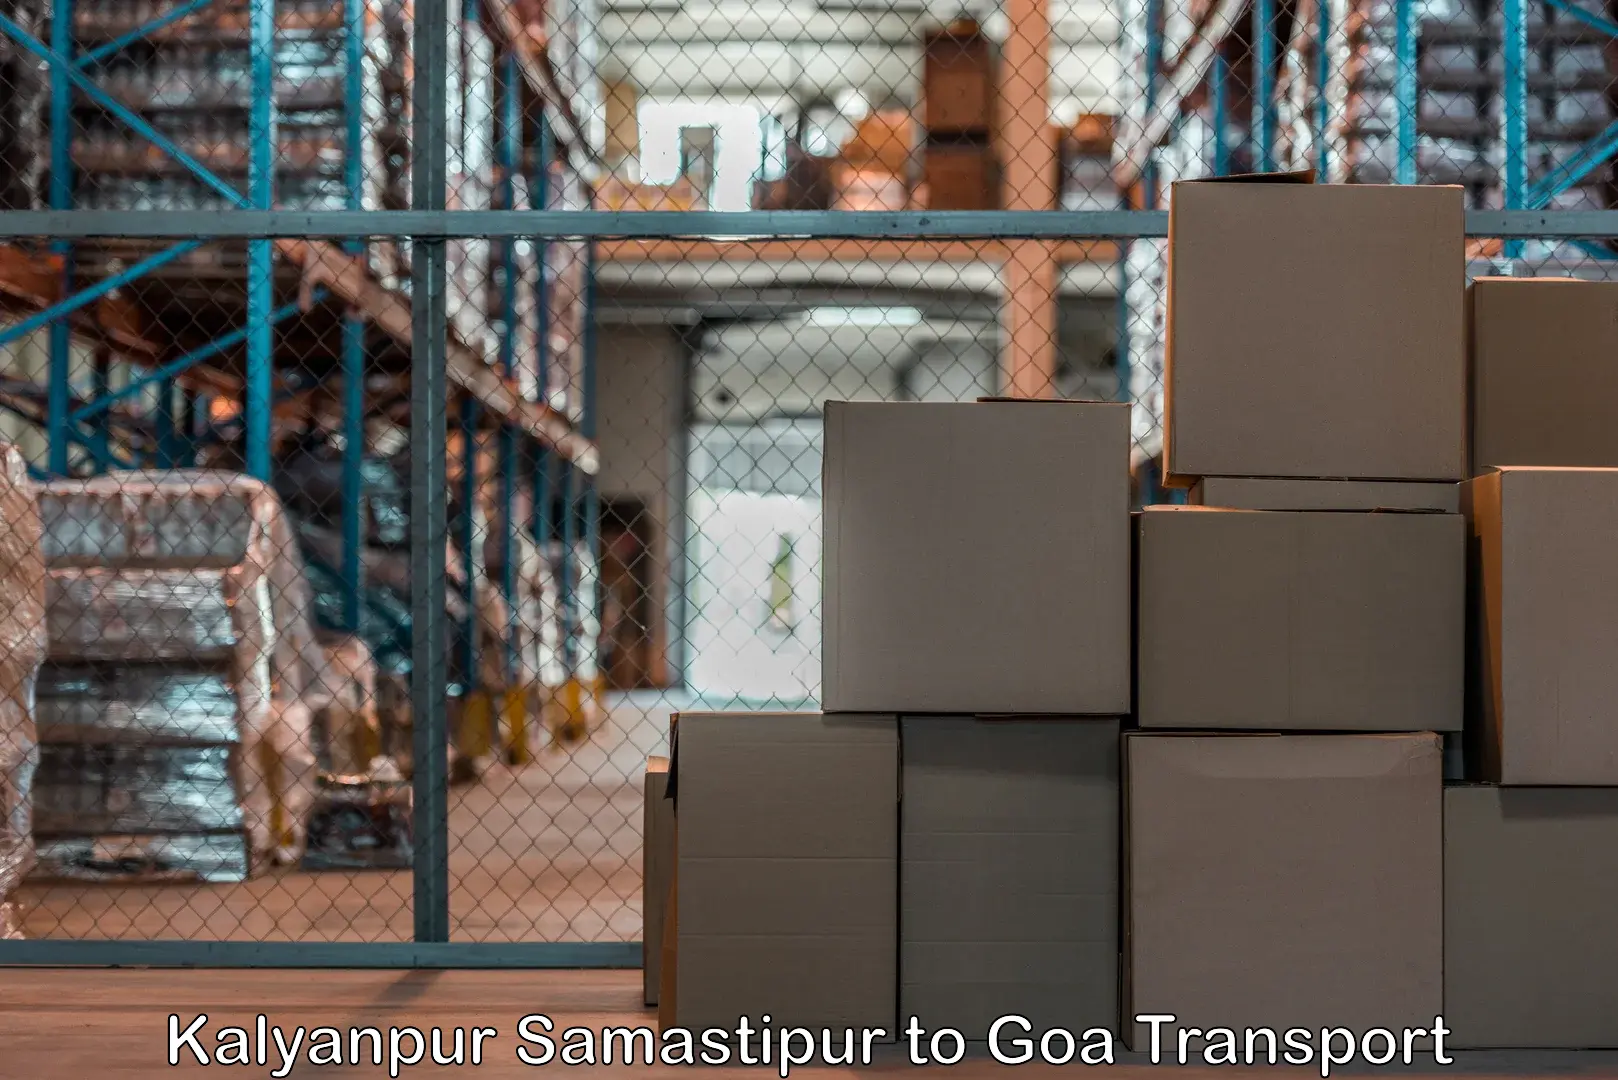 Furniture transport service Kalyanpur Samastipur to Bardez